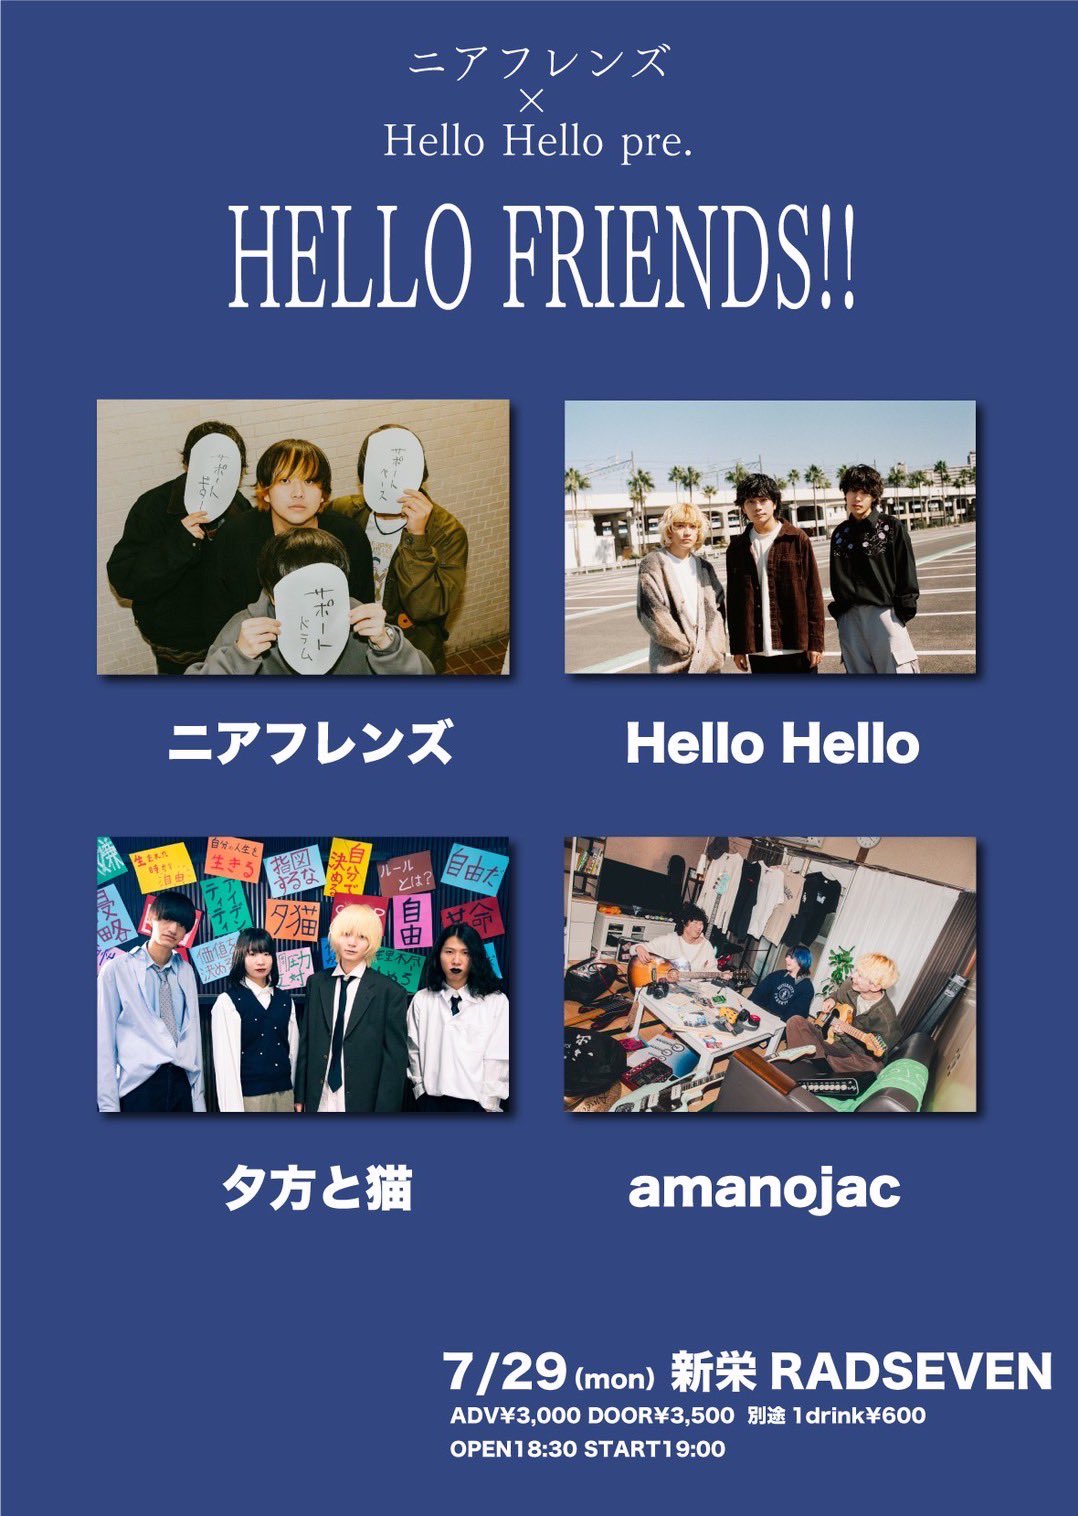 ニアフレンズ×Hello Hello pre. HELLO FRIENDS!!